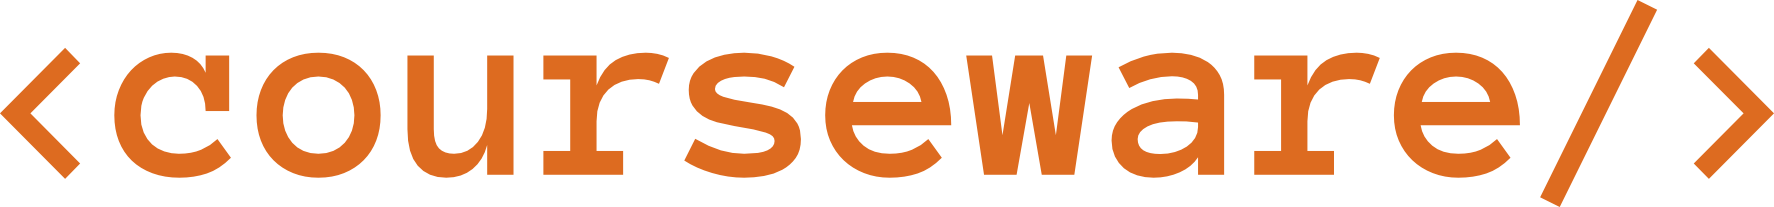 courseware.dev logo